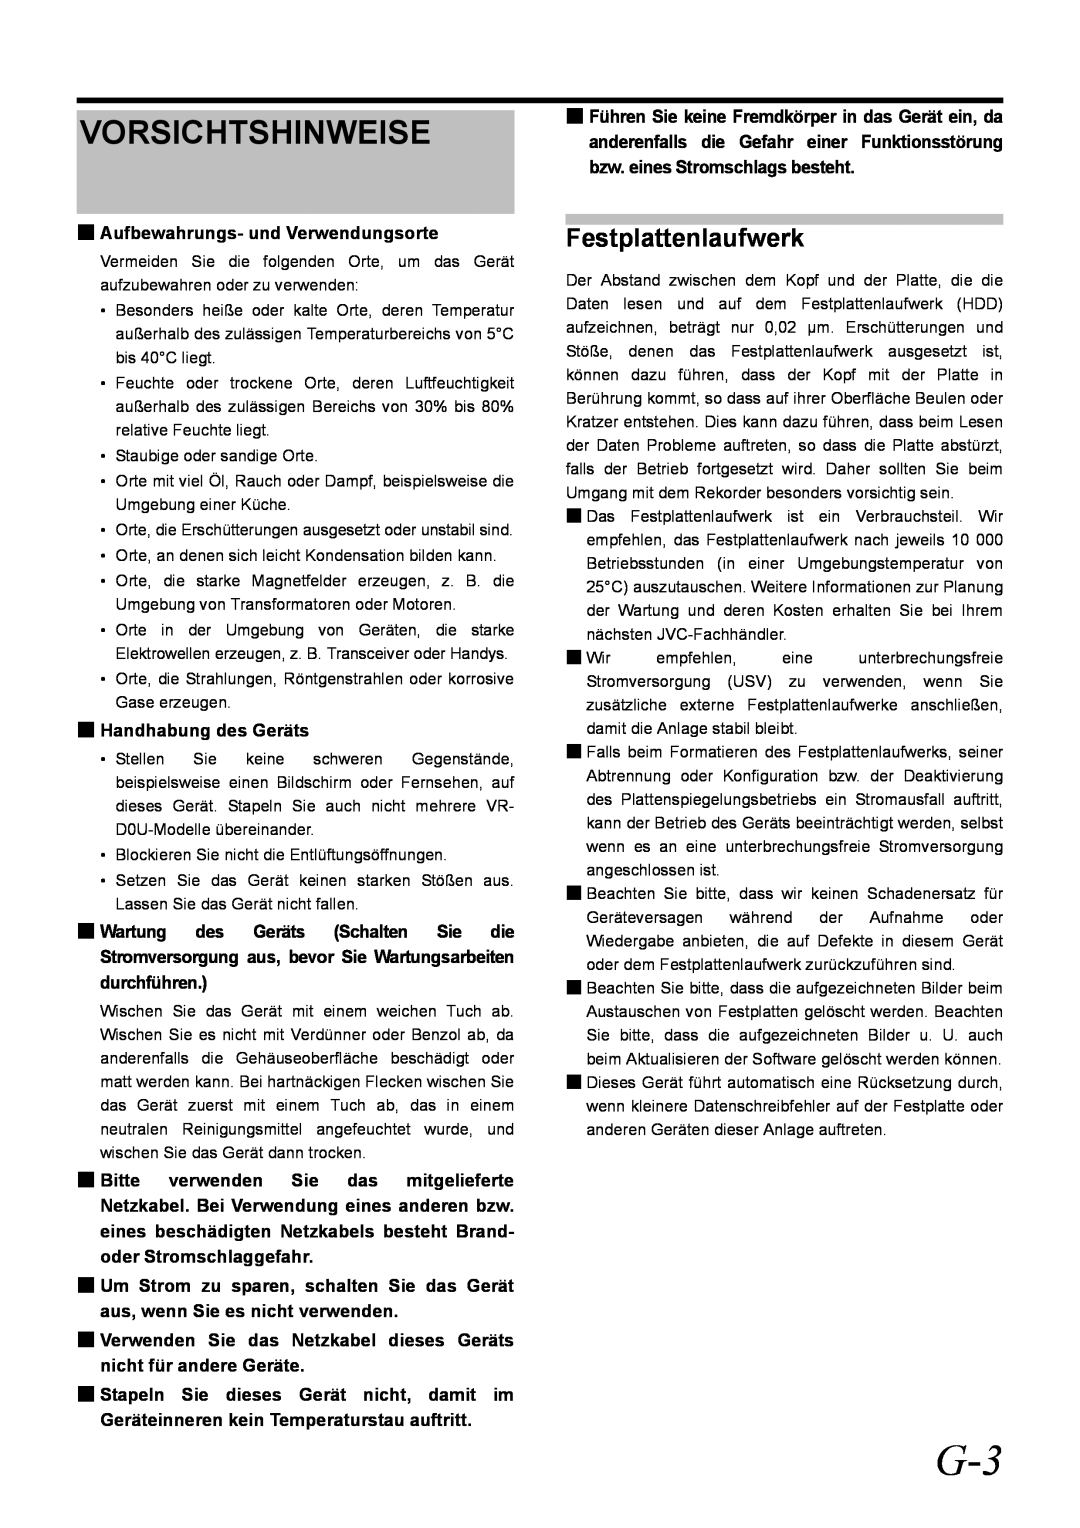 JVC VR-D0U manual Vorsichtshinweise, Festplattenlaufwerk 